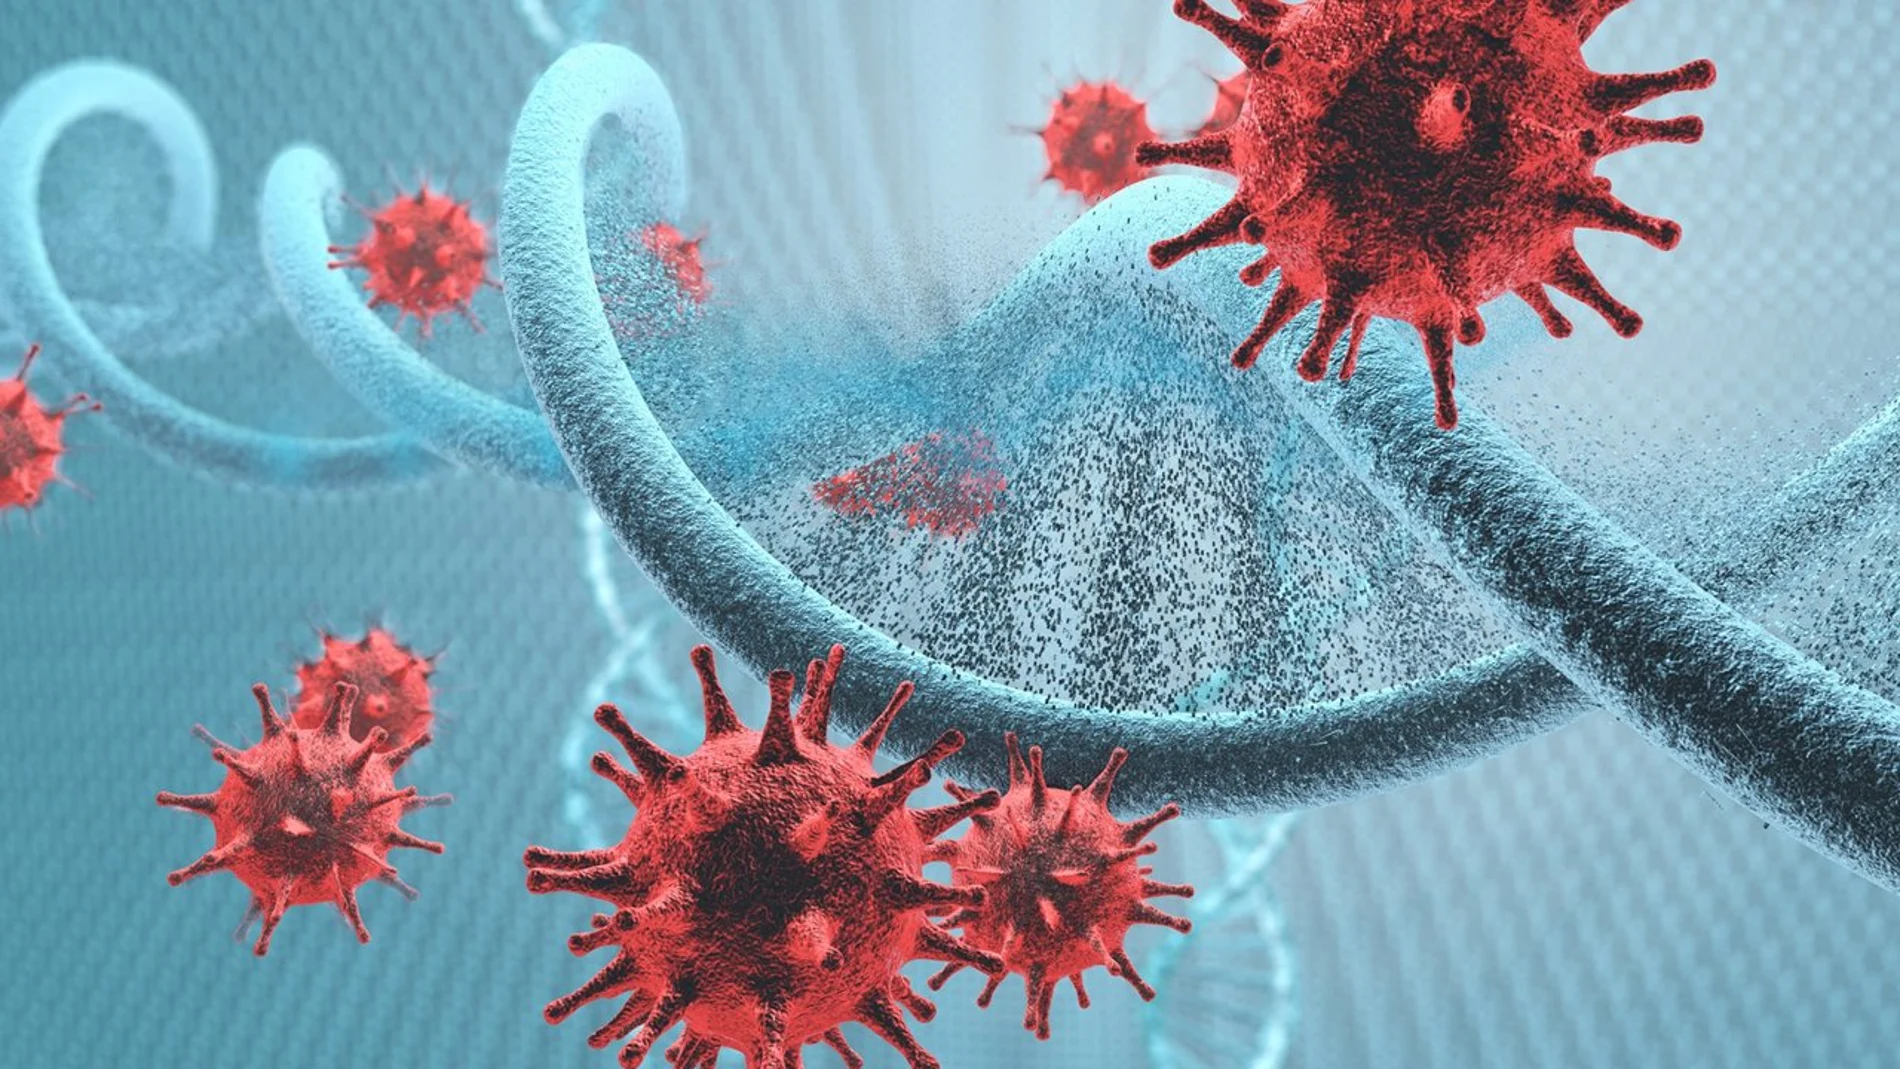 Un virus es "un rganismo de estructura muy sencilla, compuesto de proteínas y ácidos nucleicos, y capaz de reproducirse solo en el seno de células vivas específicas, utilizando su metabolismo"